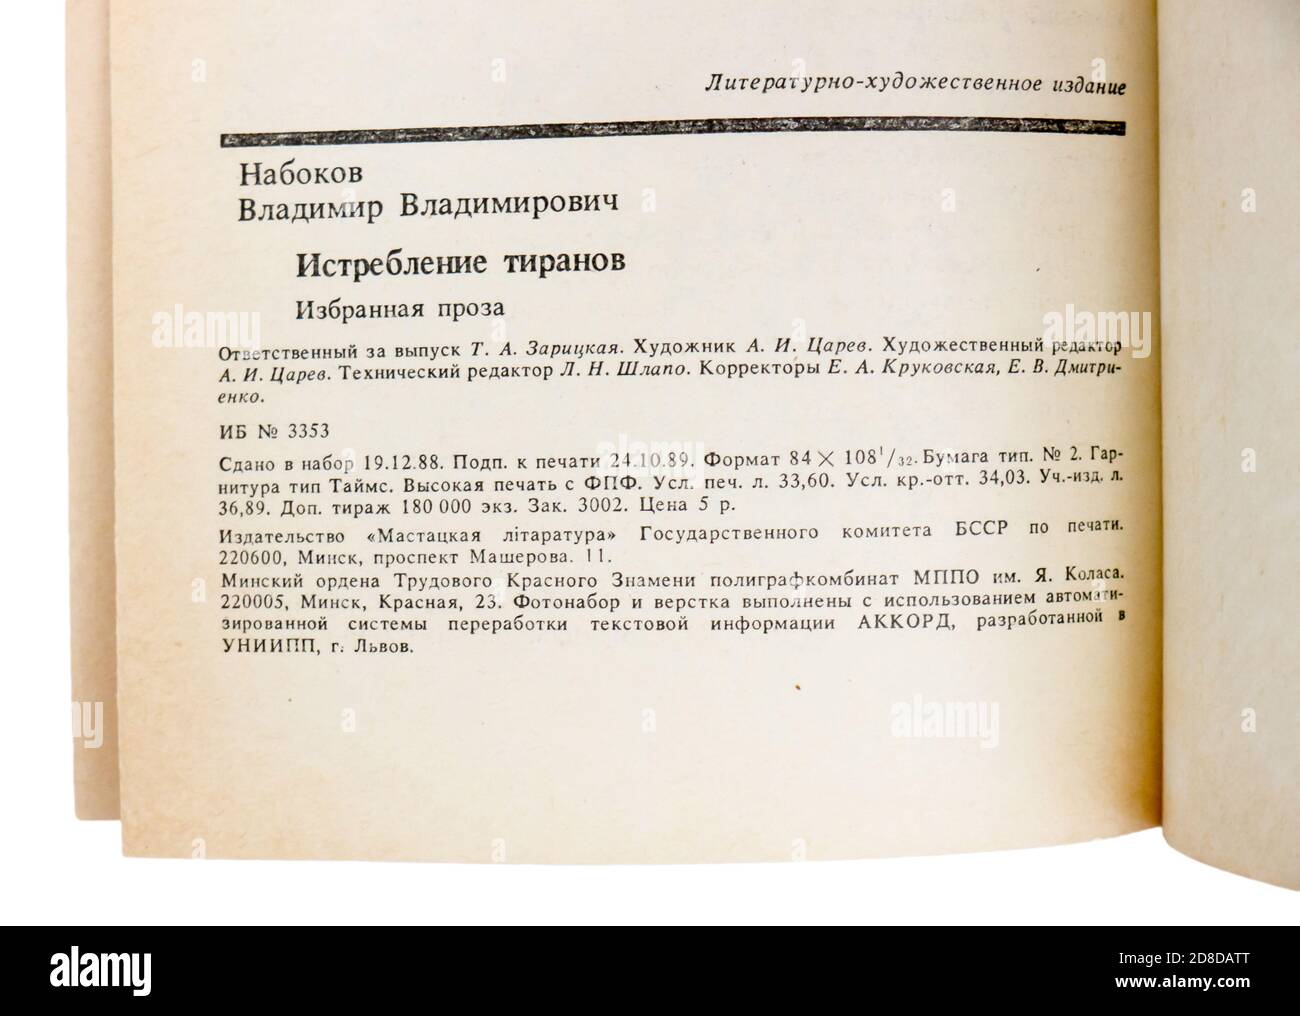 I 'tiranni distrutti e altre storie' sono una raccolta di tredici racconti di Vladimir Nabokov, pubblicati per la prima volta nel 1989 in URSS. Foto Stock